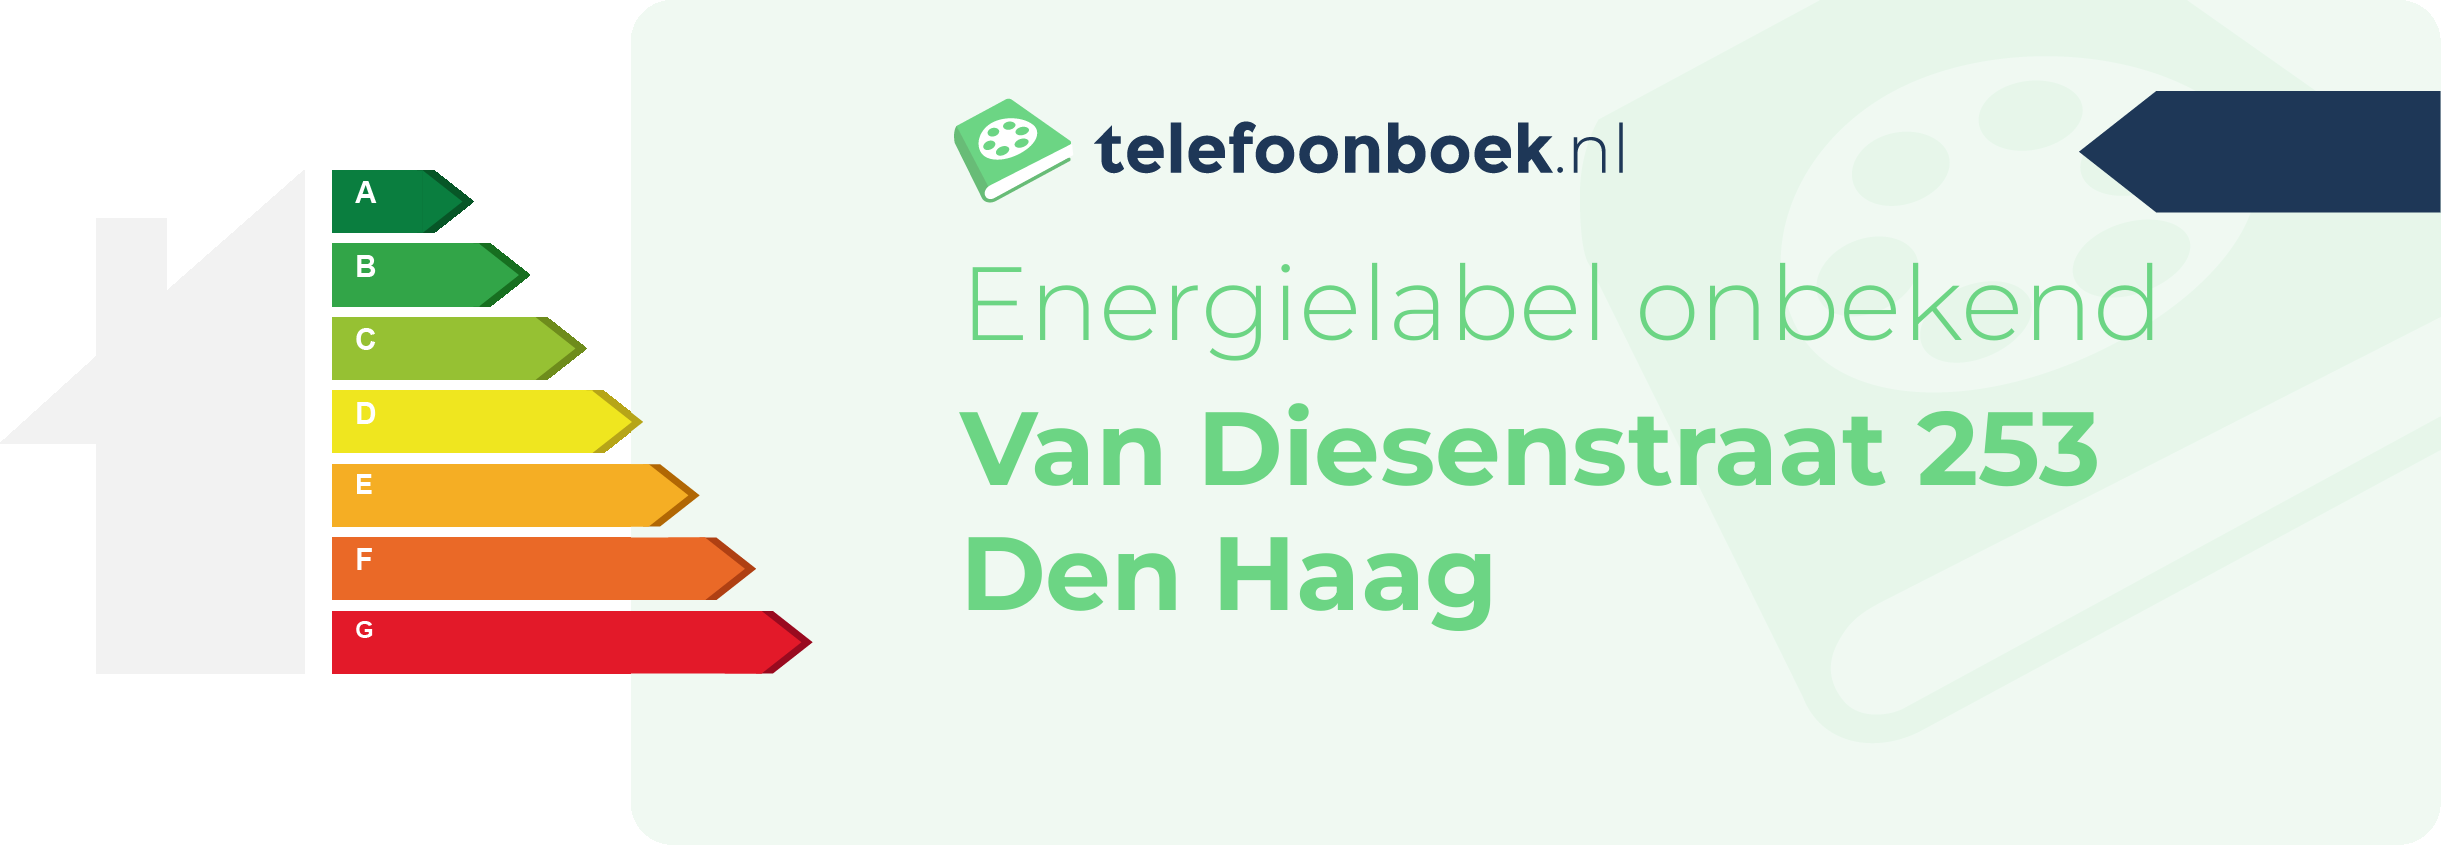 Energielabel Van Diesenstraat 253 Den Haag